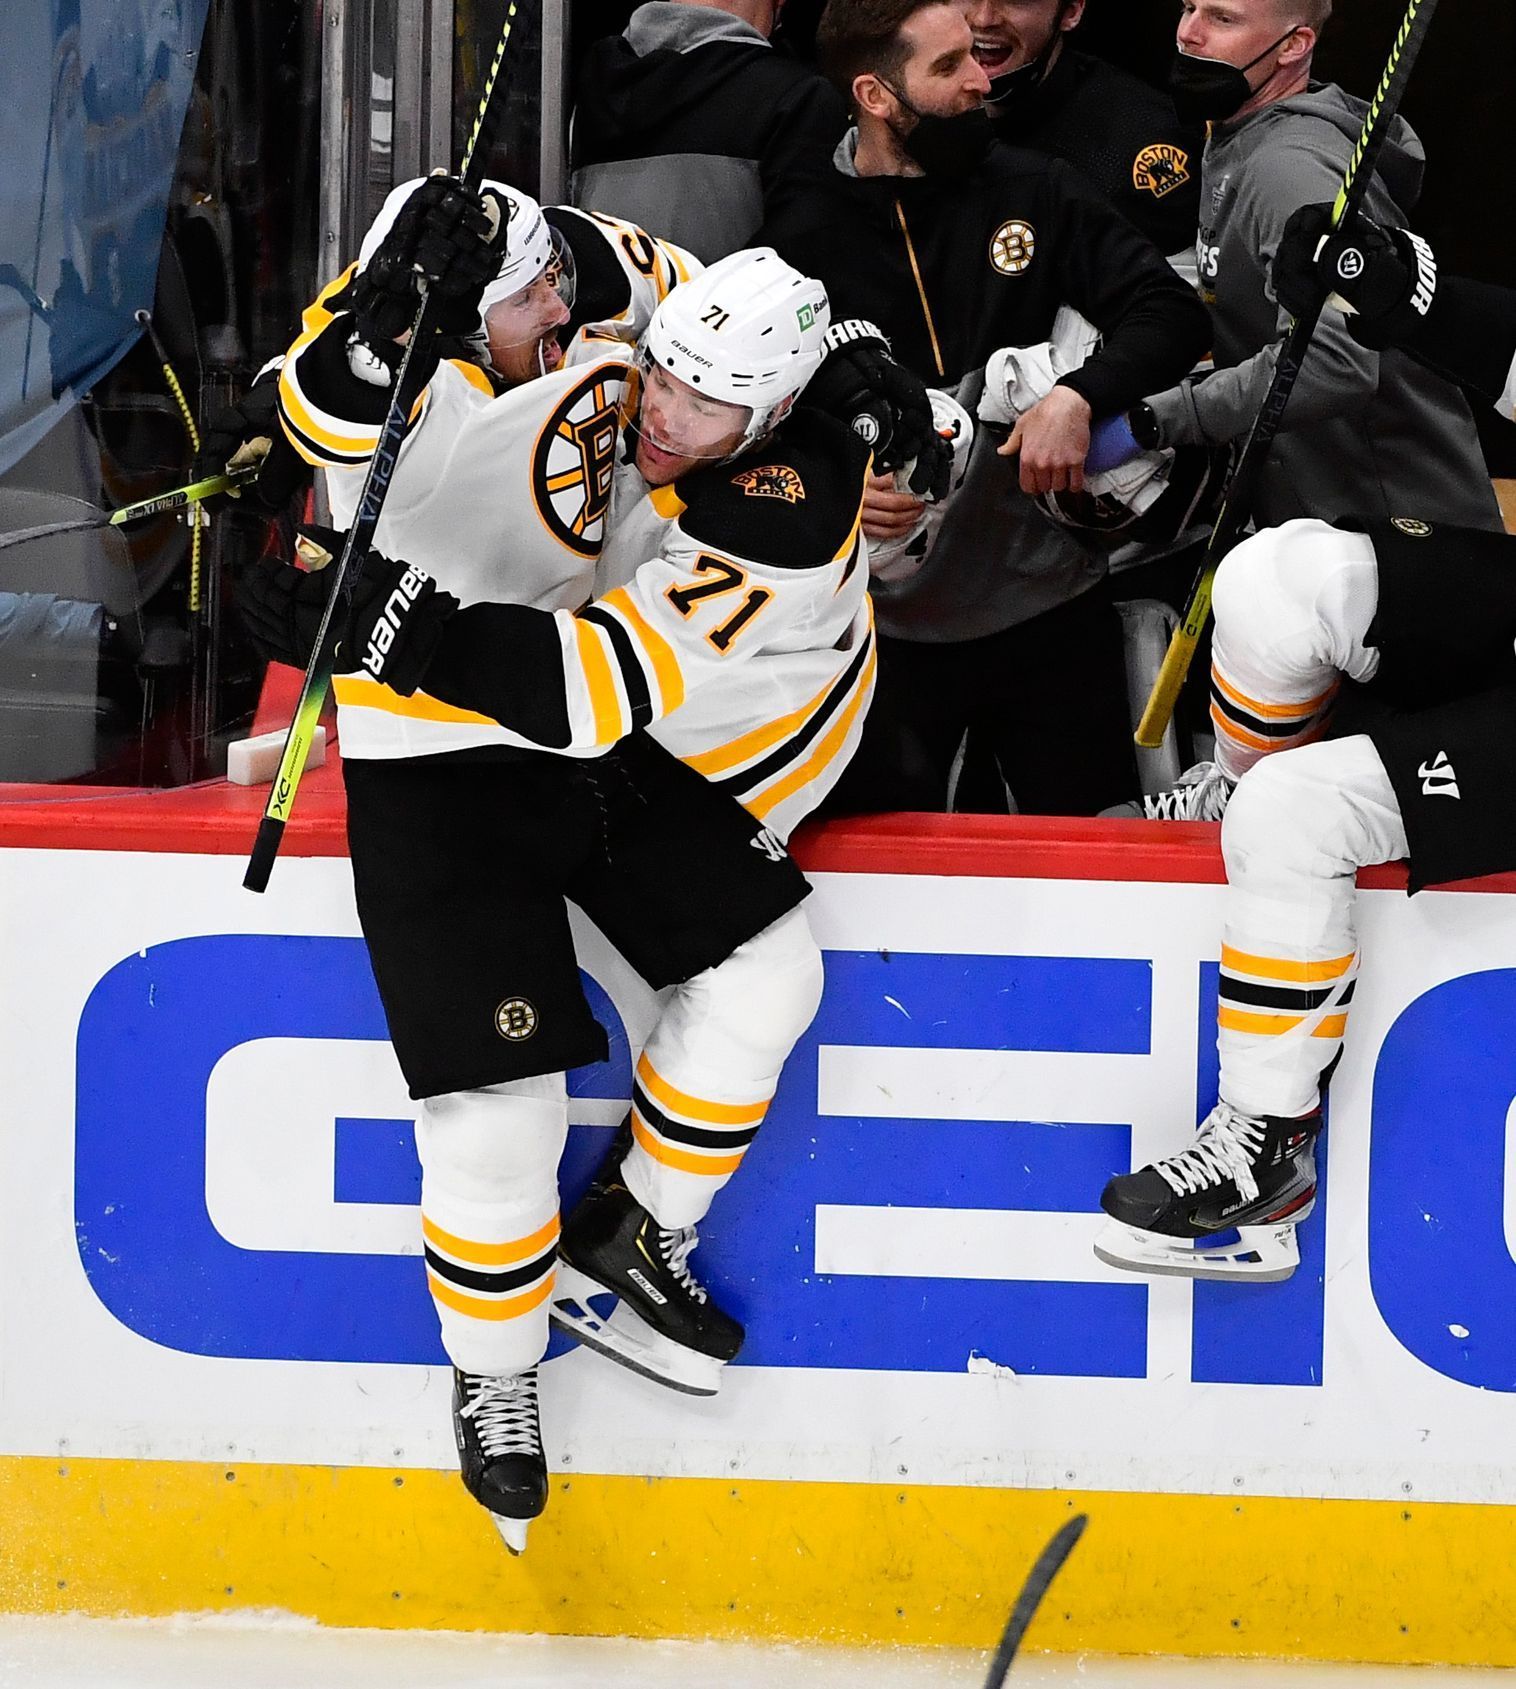 hokej, NHL 2020/2021, Stanley Cup Play off - Boston Bruins at Washington Capitals, Brad Marchand slaví gól, kterým zápas v prodloužení rozhodl